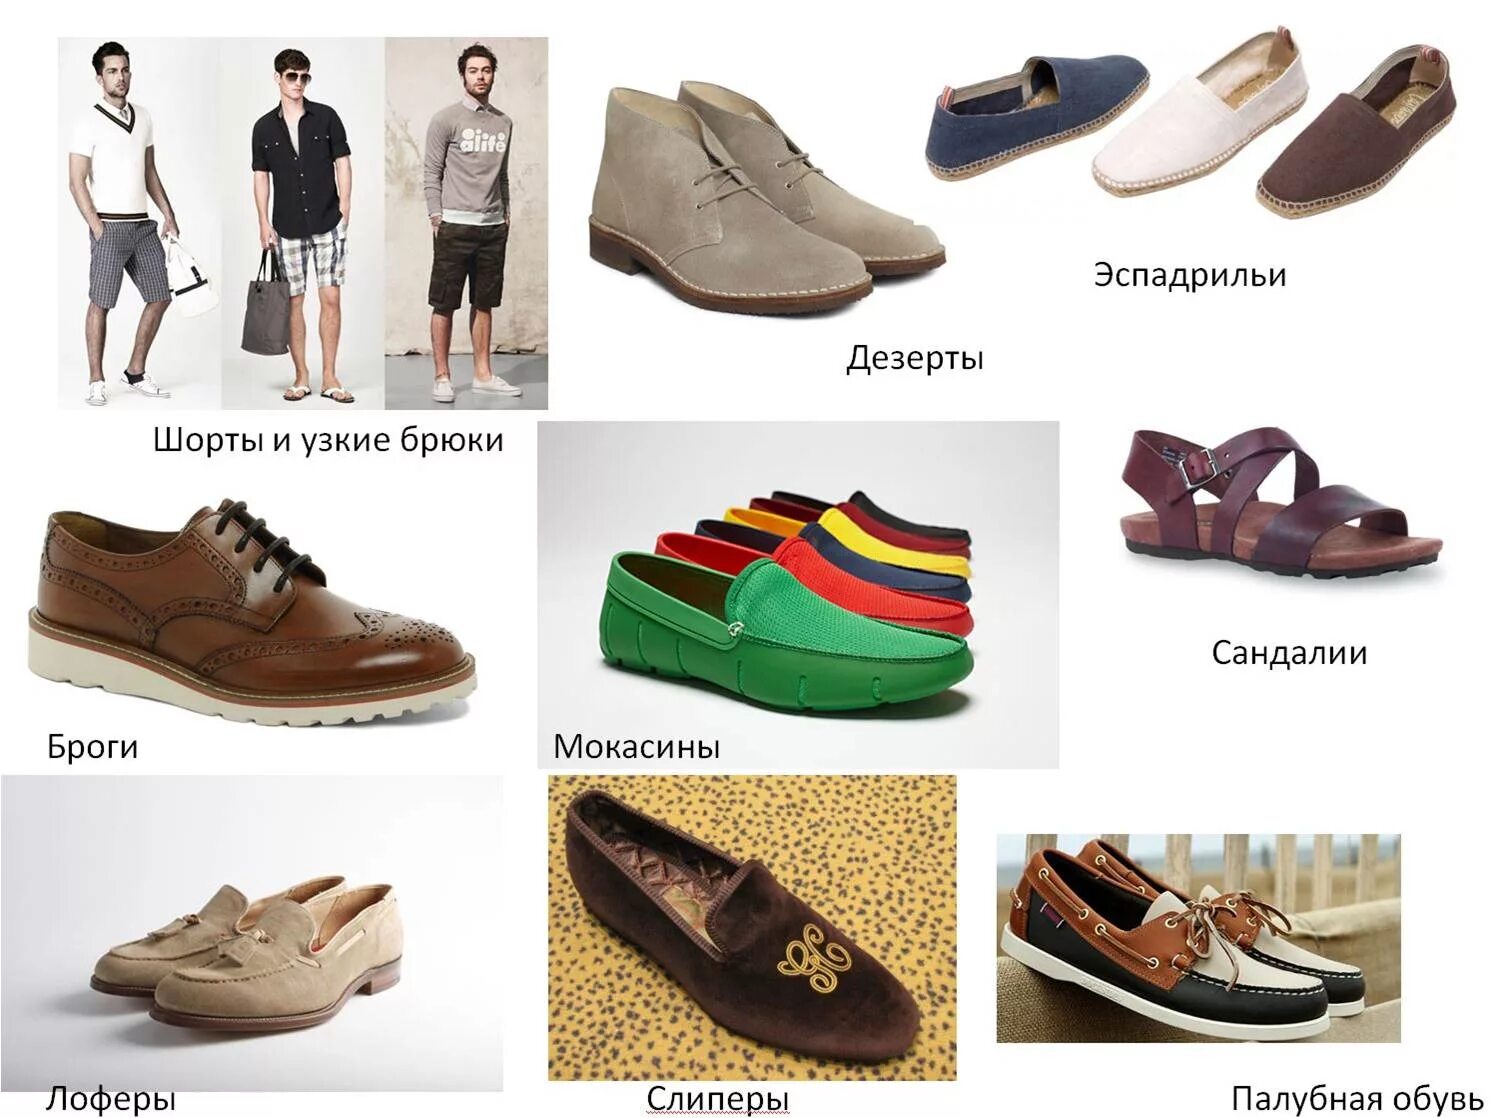 Какой обувь надо. Выбор мужской обуви на весну. Обувь для ношения в доме. Какую обувь носить весной летом. Одевать обувь.